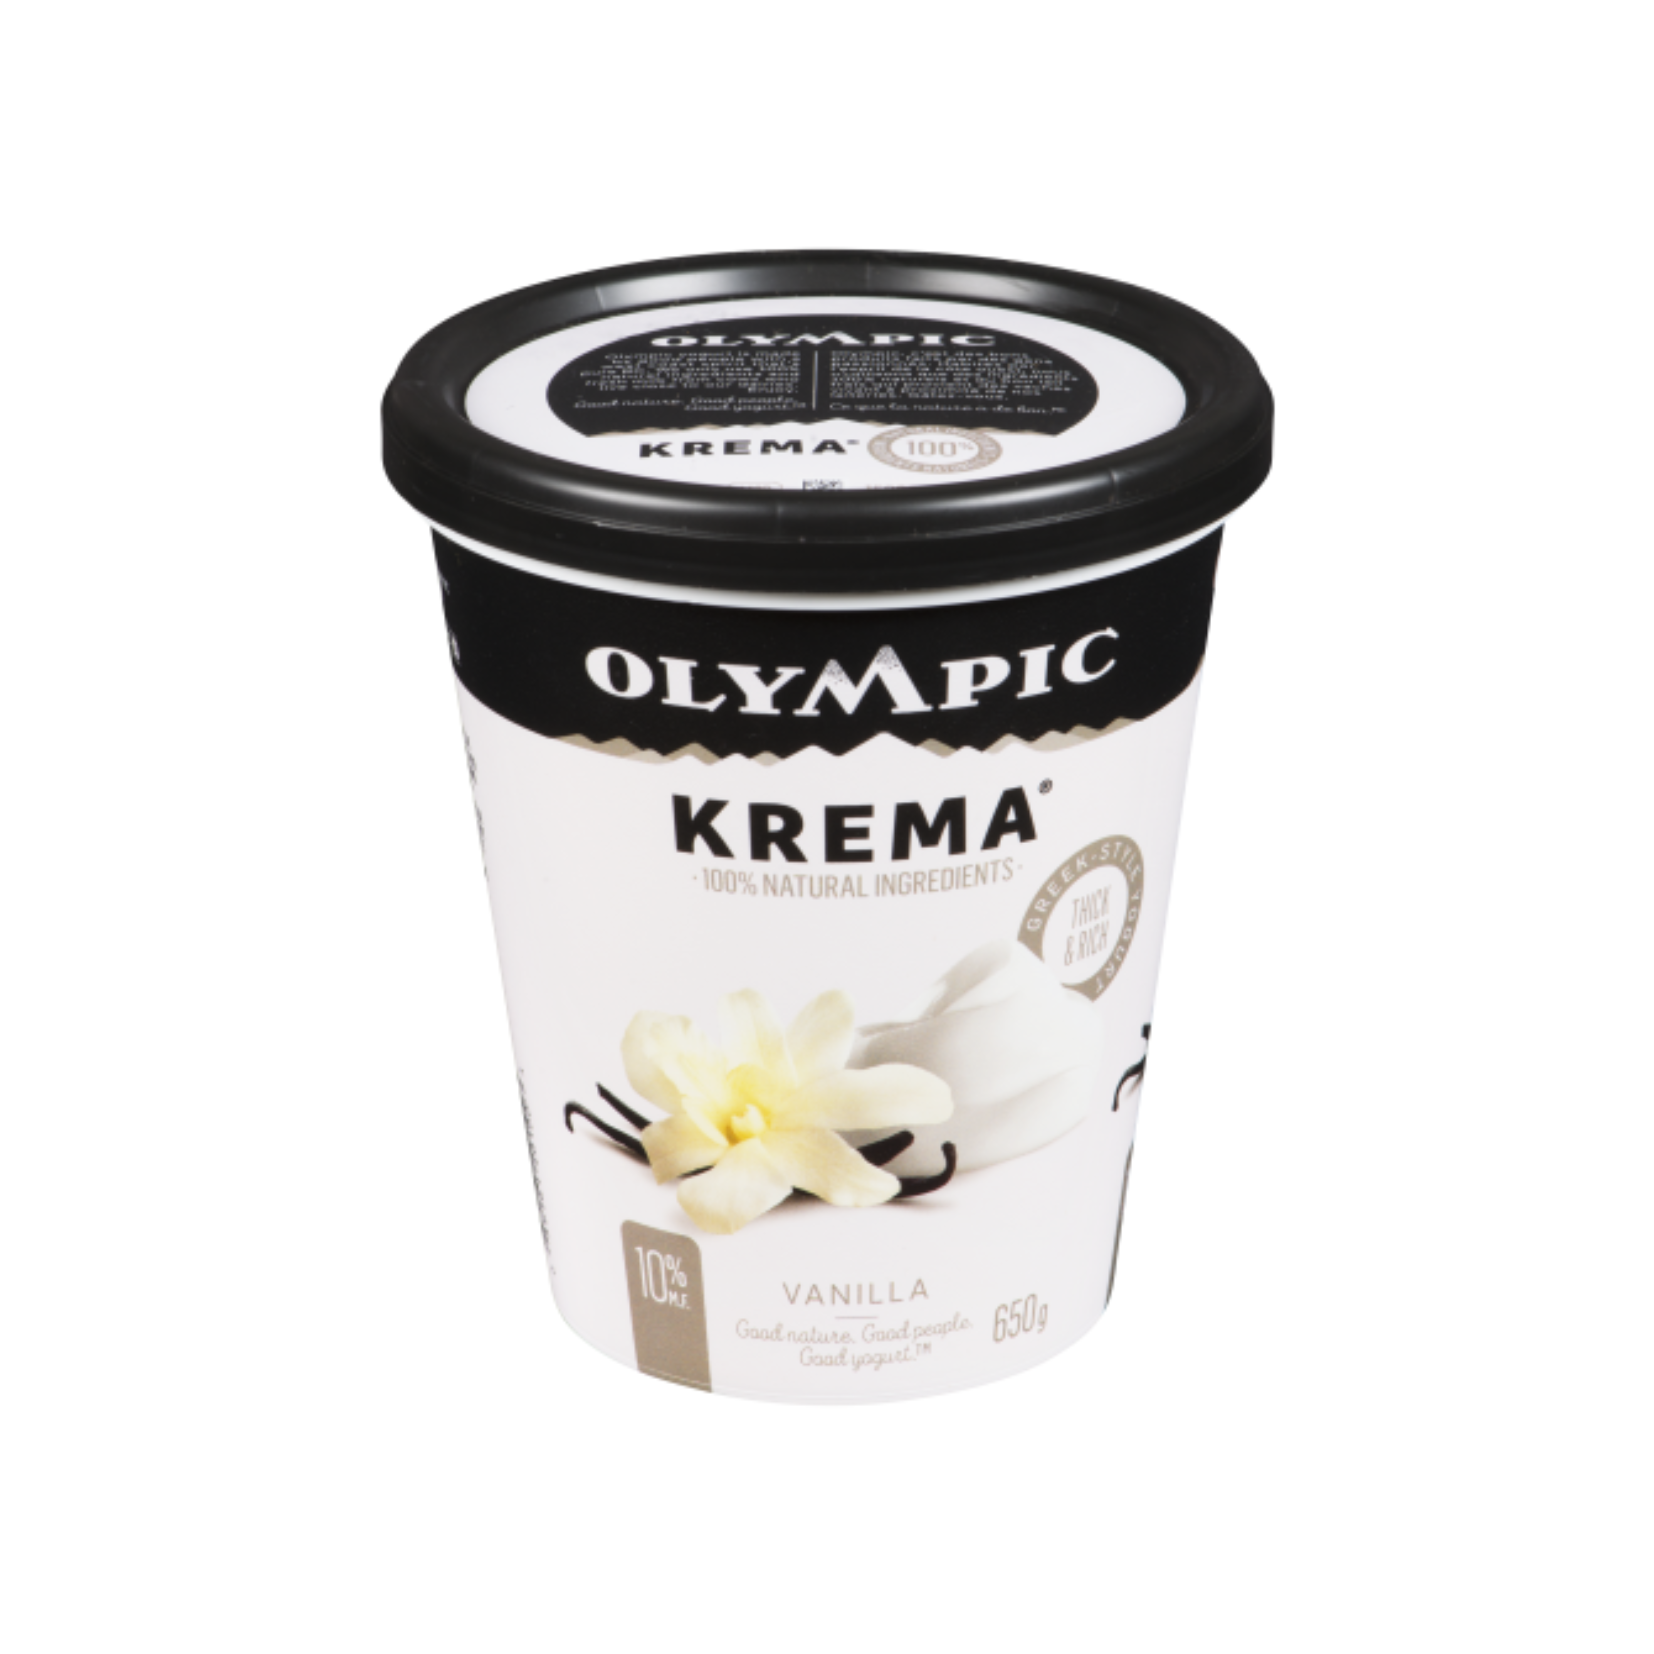 Olympic Krema 9% Vanilla Greek Yogurt 650g